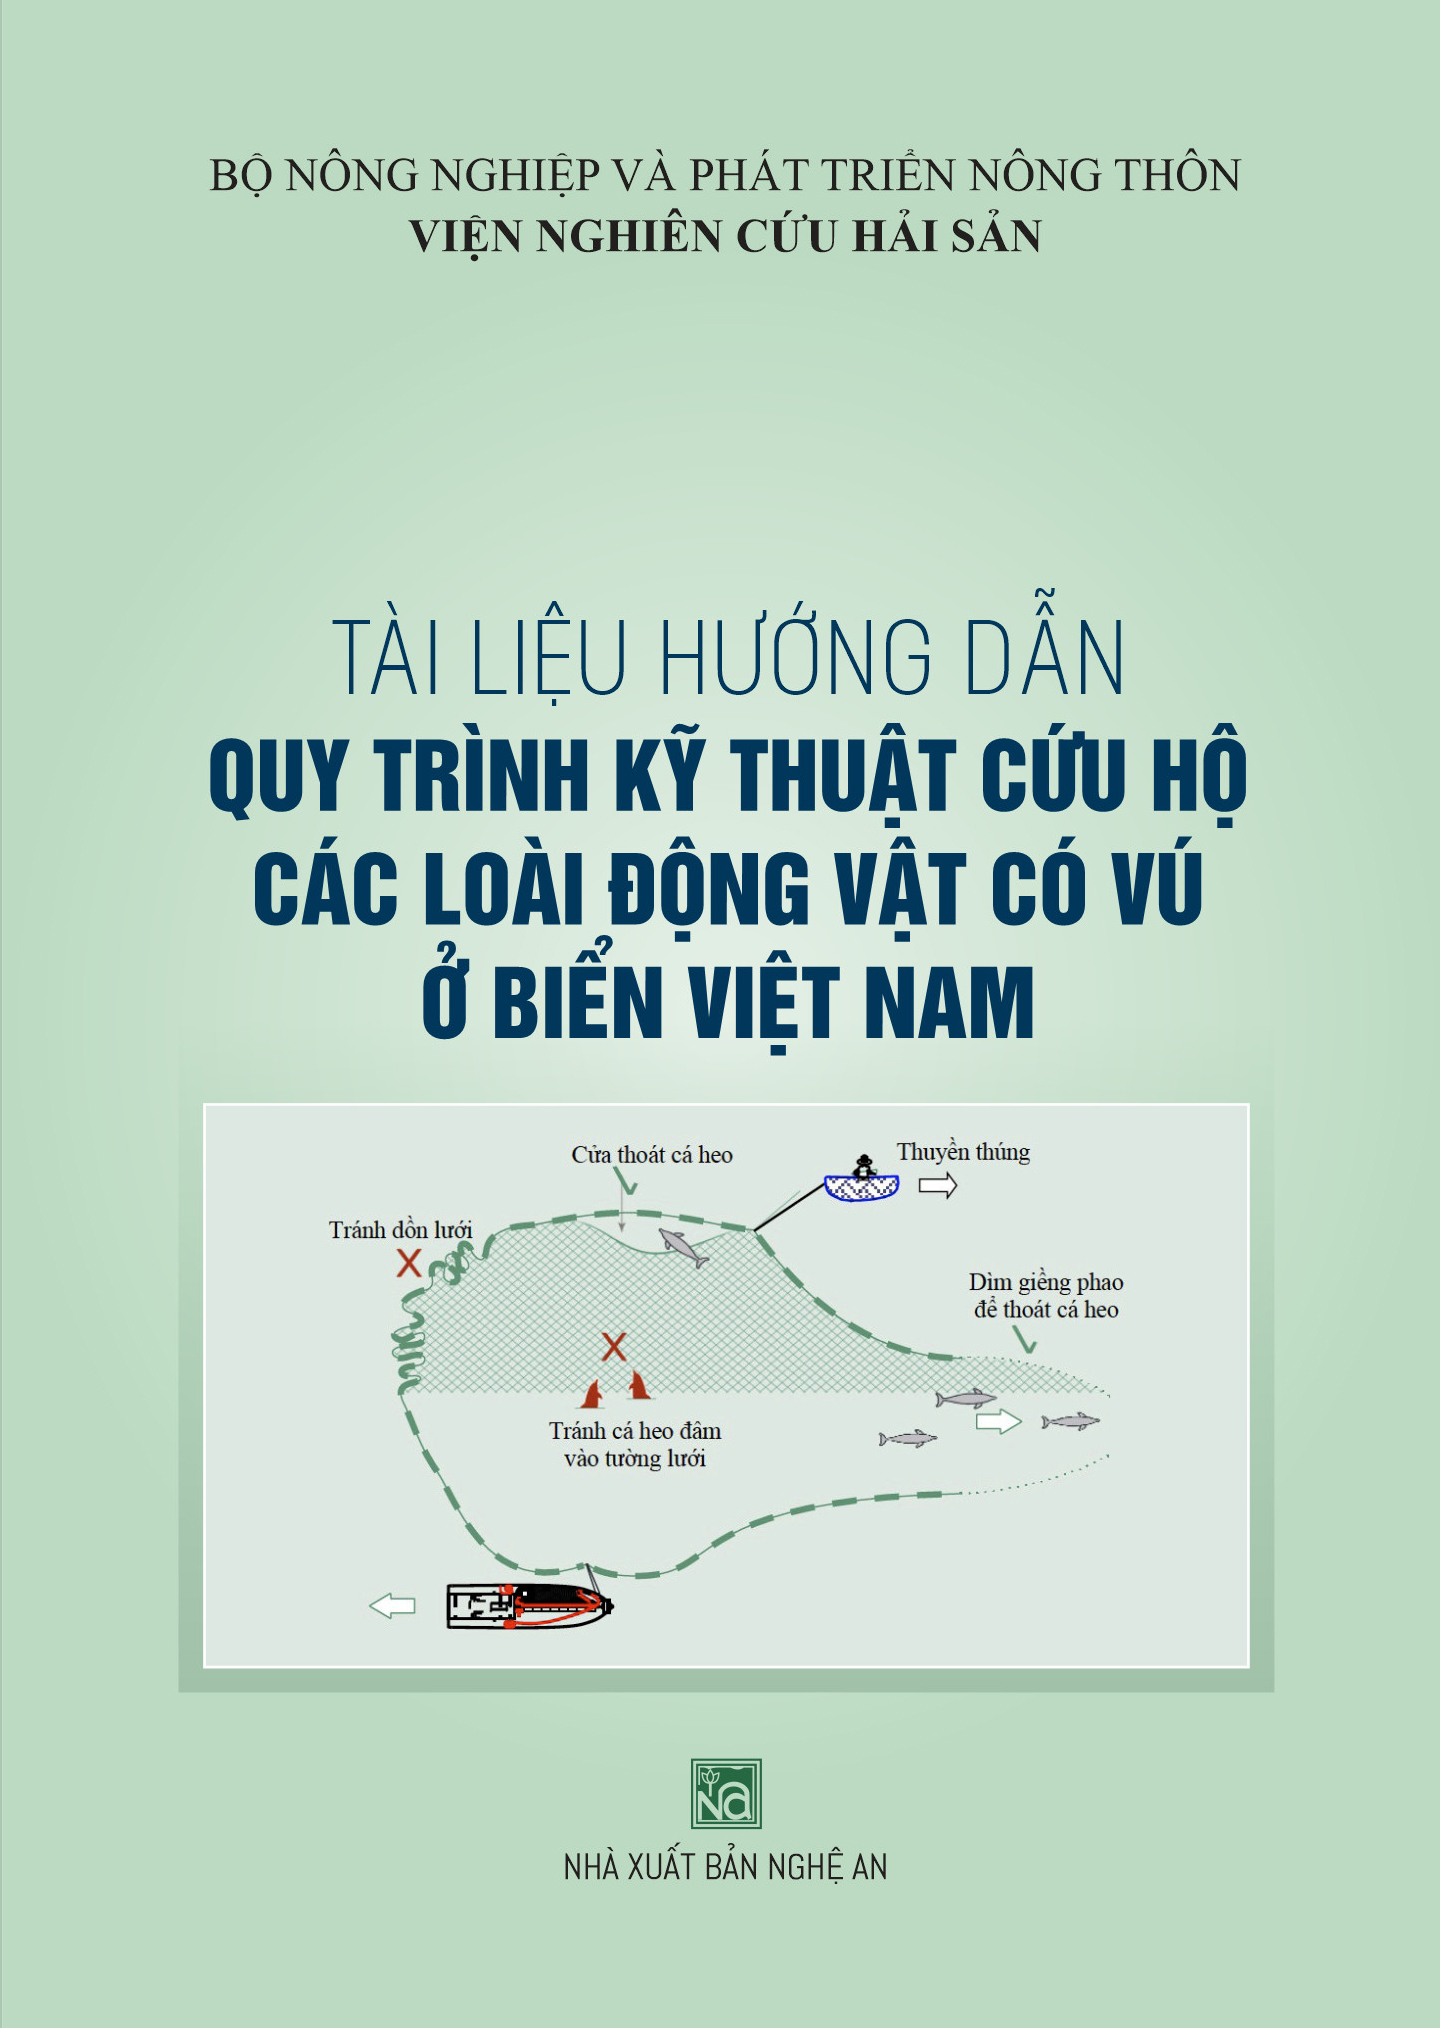 Tài liệu hướng dẫn quy trình kỹ thuật cứu hộ các loài động vật có vú ở vùng biển Việt Nam